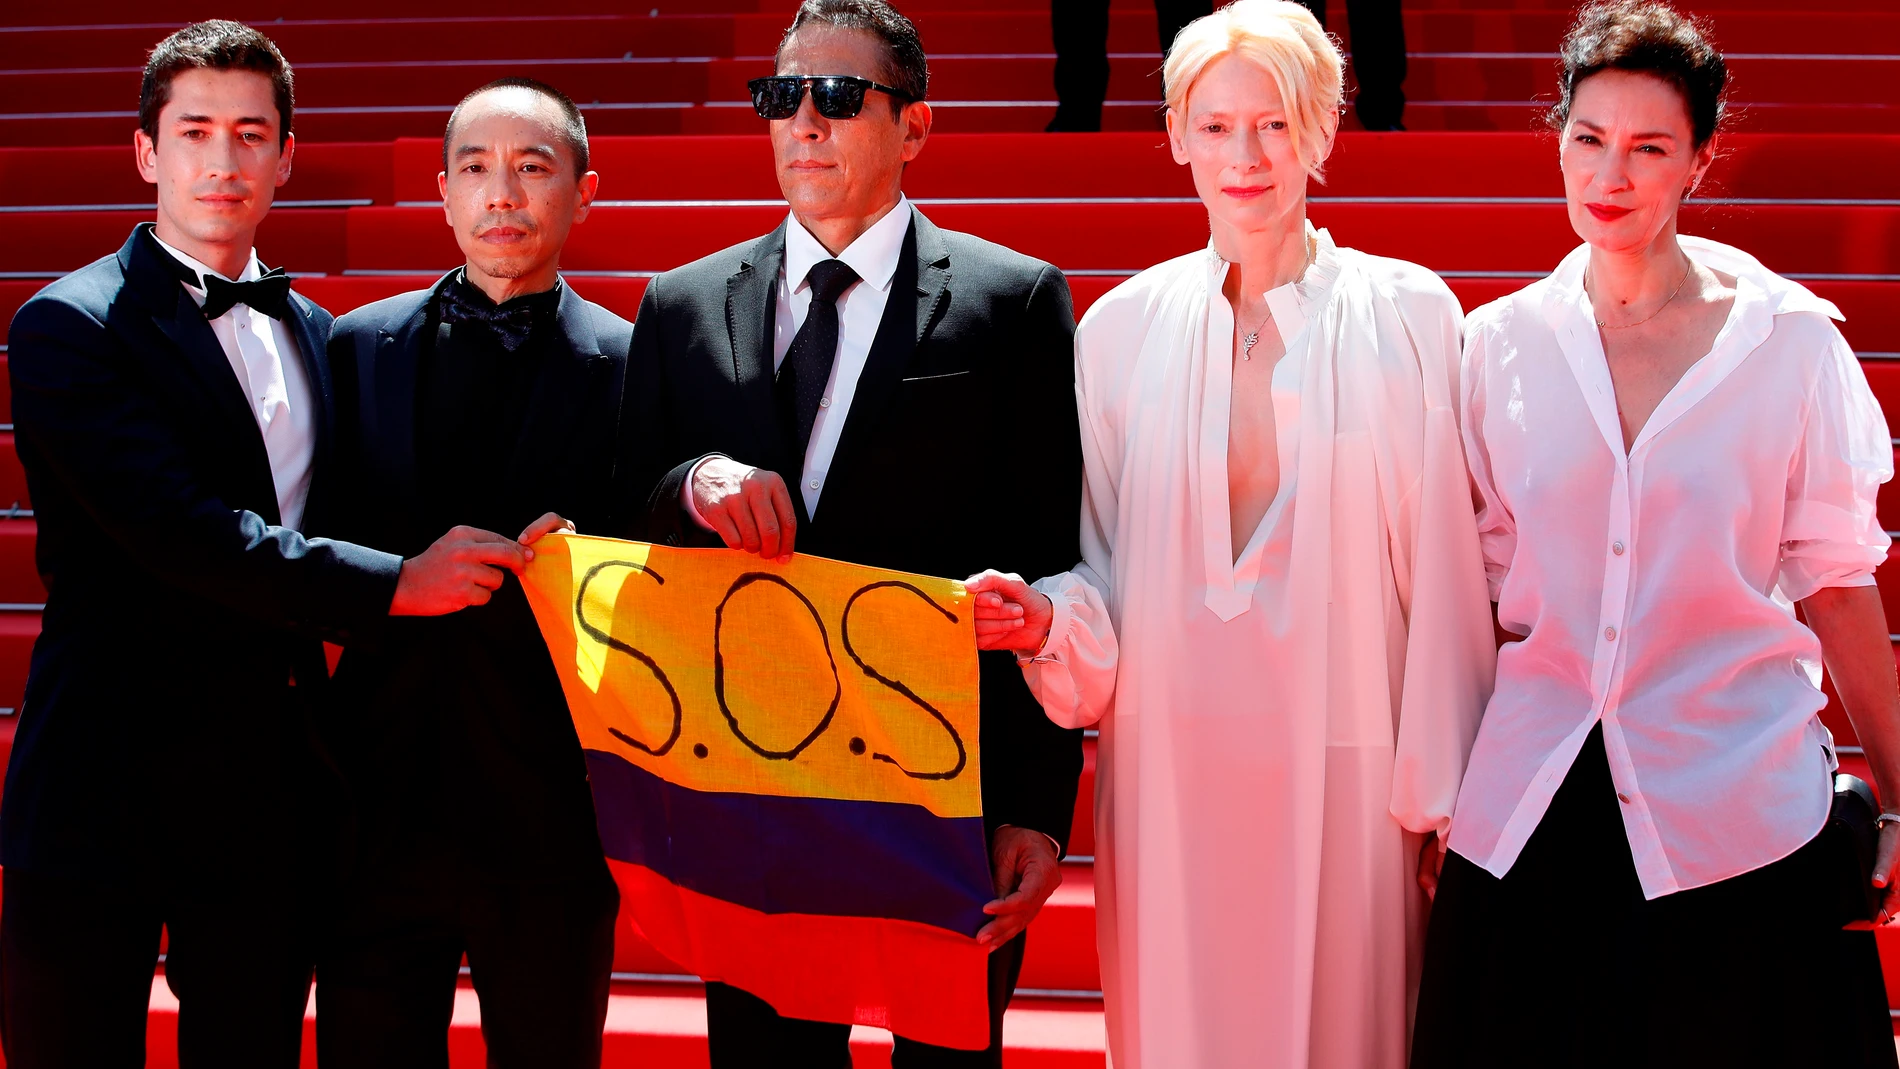 Juan Pablo Urrego, Apichatpong Weerasethakul, Elkin Diaz, Tilda Swinton y Jeanne Balibar apoyaron a los colombianos exhibiendo una bandera de su país